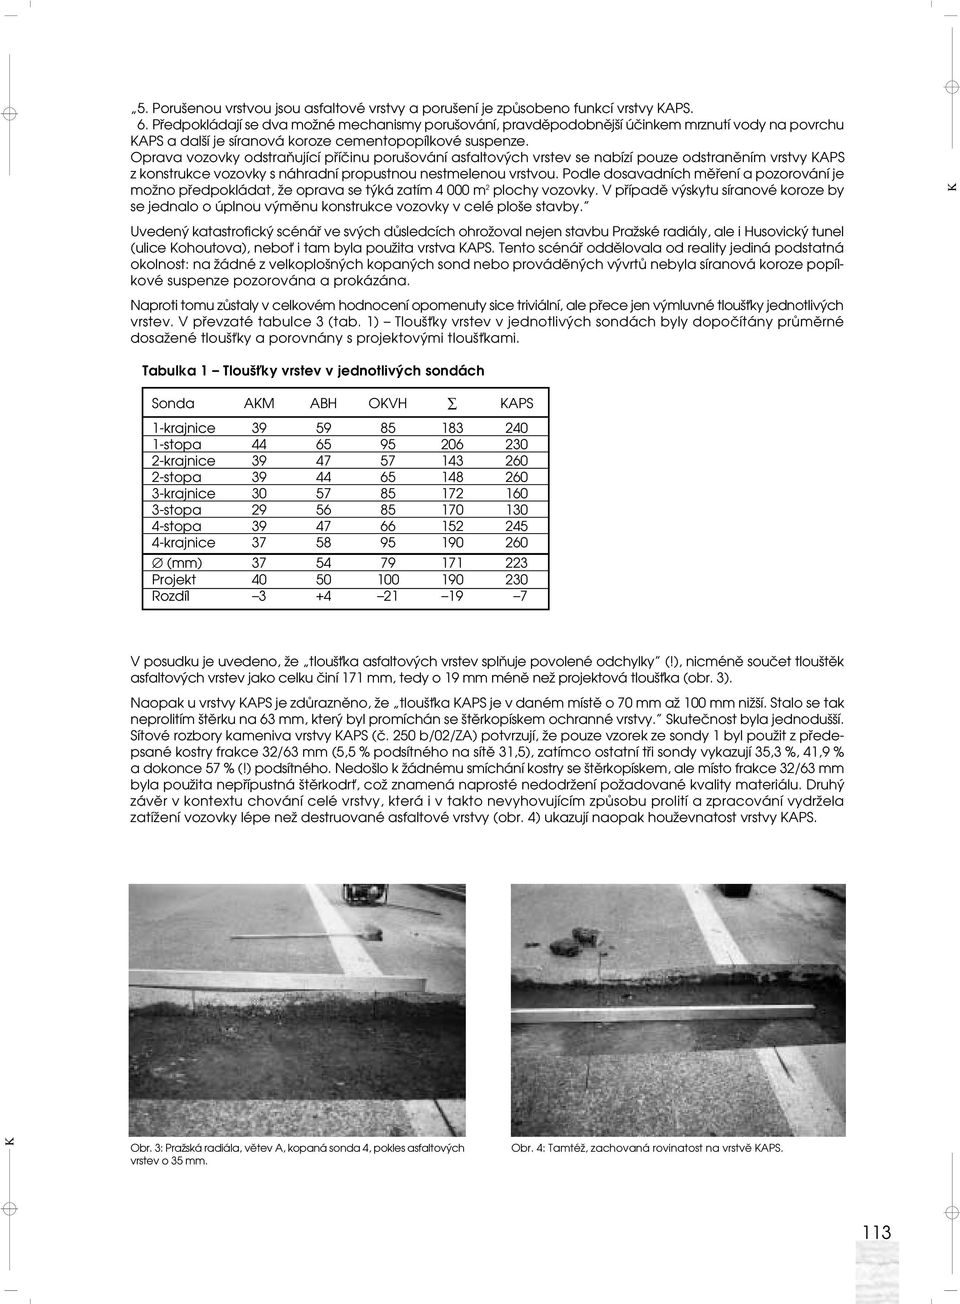 Oprava vozovky odstraňující příčinu porušování asfaltových vrstev se nabízí pouze odstraněním vrstvy APS z konstrukce vozovky s náhradní propustnou nestmelenou vrstvou.